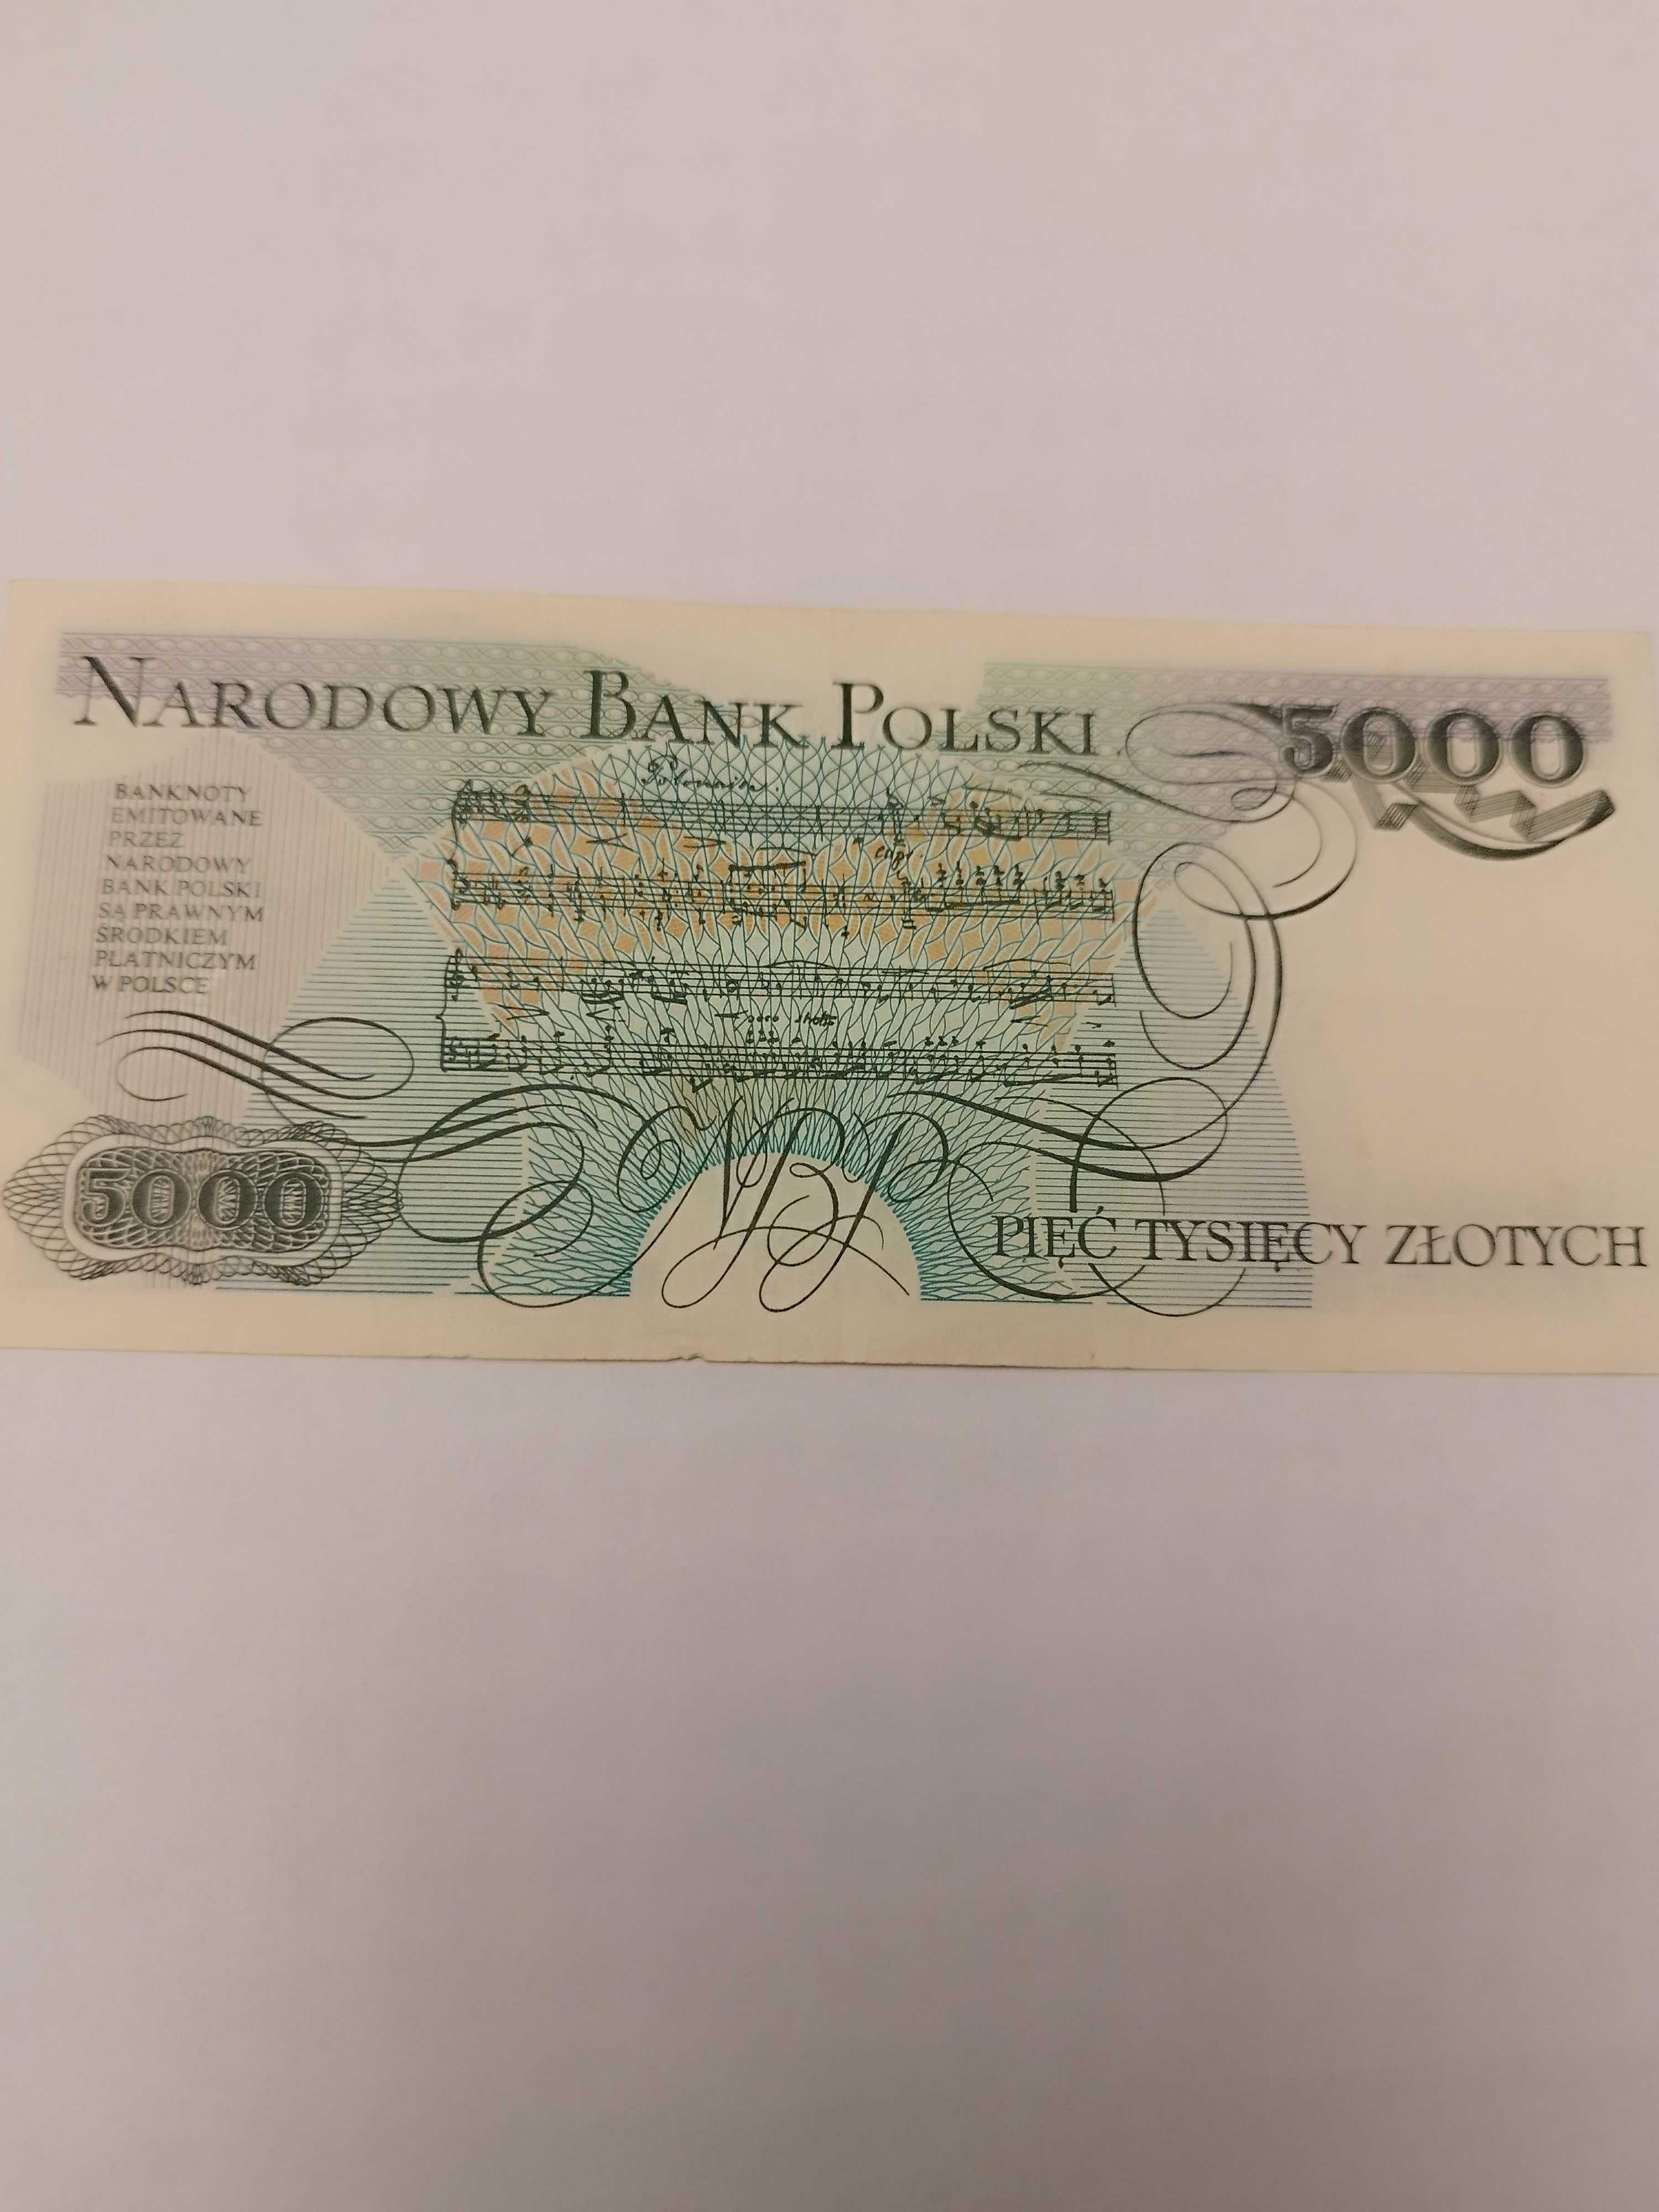 Banknot 5.000 zł z 1982 roku sprzedam.